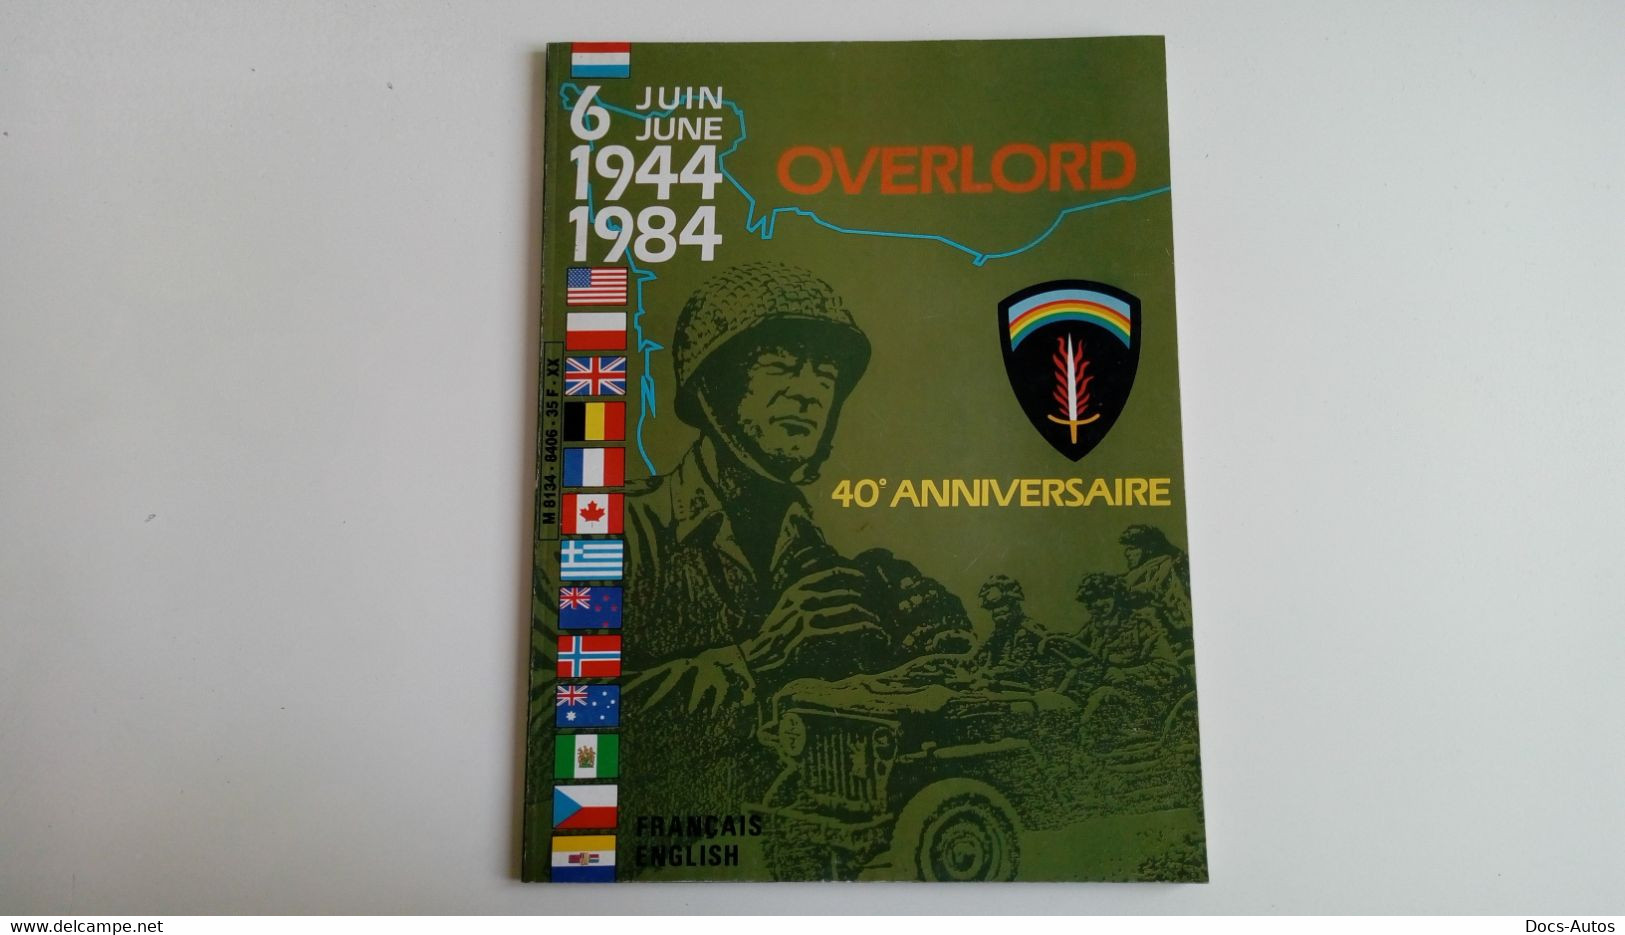 OVERLORD 40ème Anniversaire - 6 JUIN 1944 / 1984 - Français